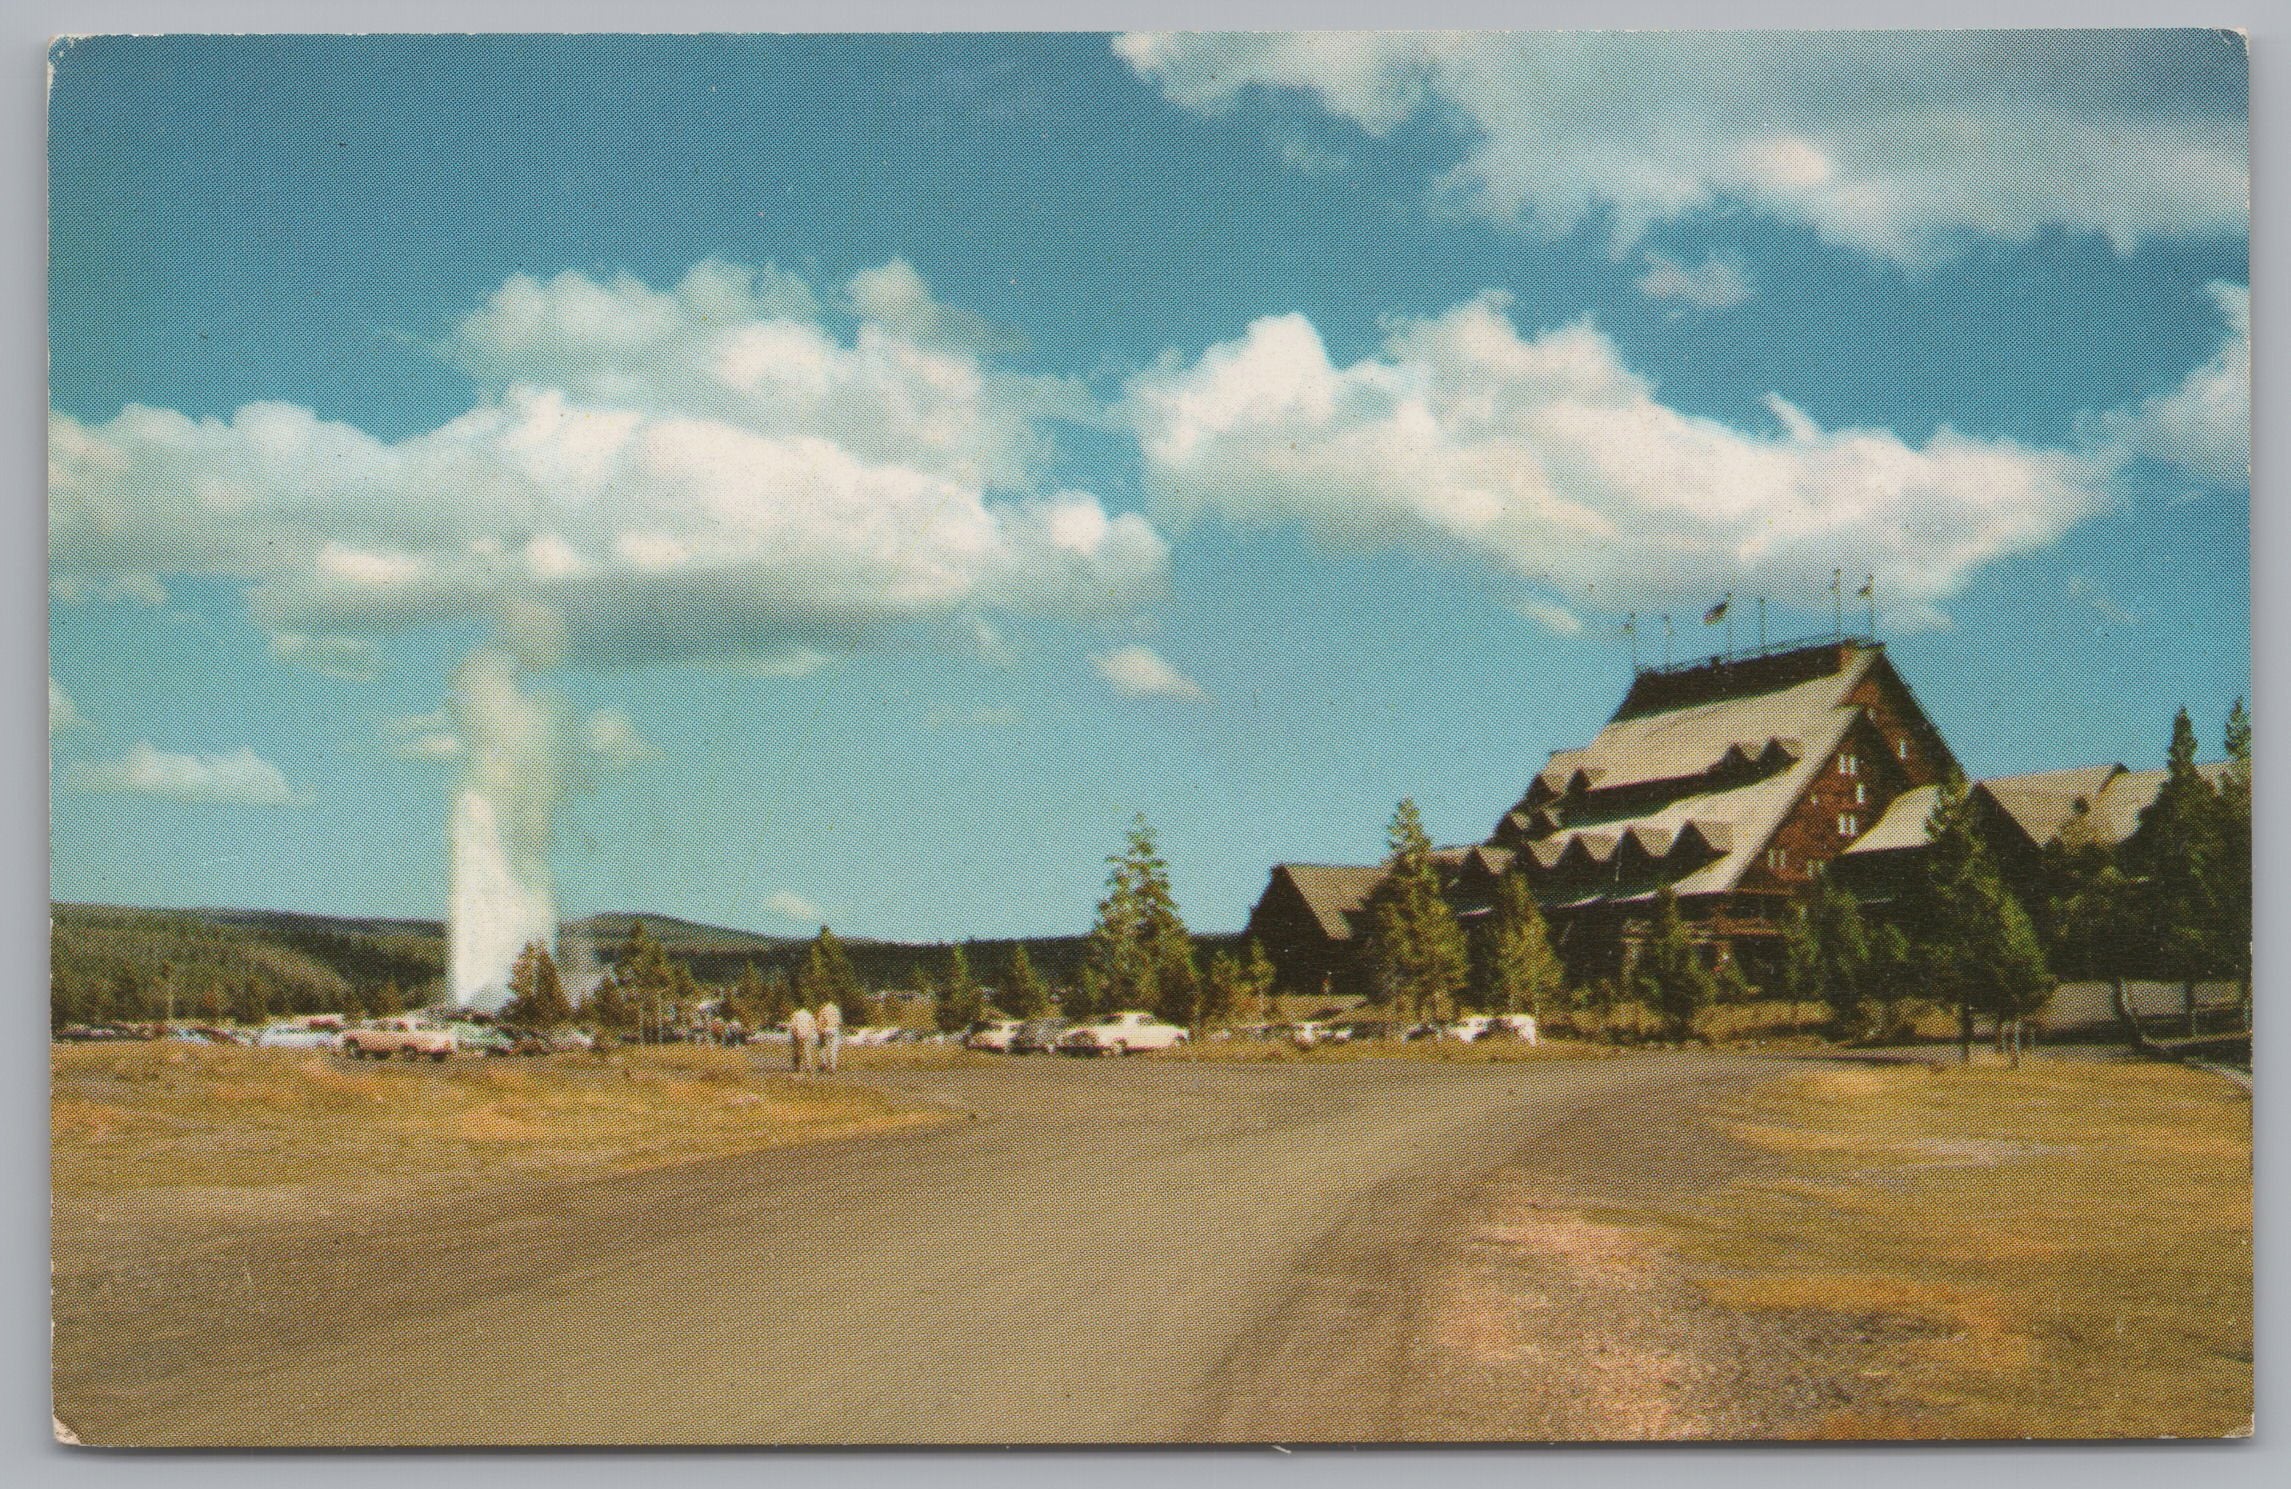 Old Faithful Inn, Yellowstone Parks Hotel, California, USA, Vintage Post Card.